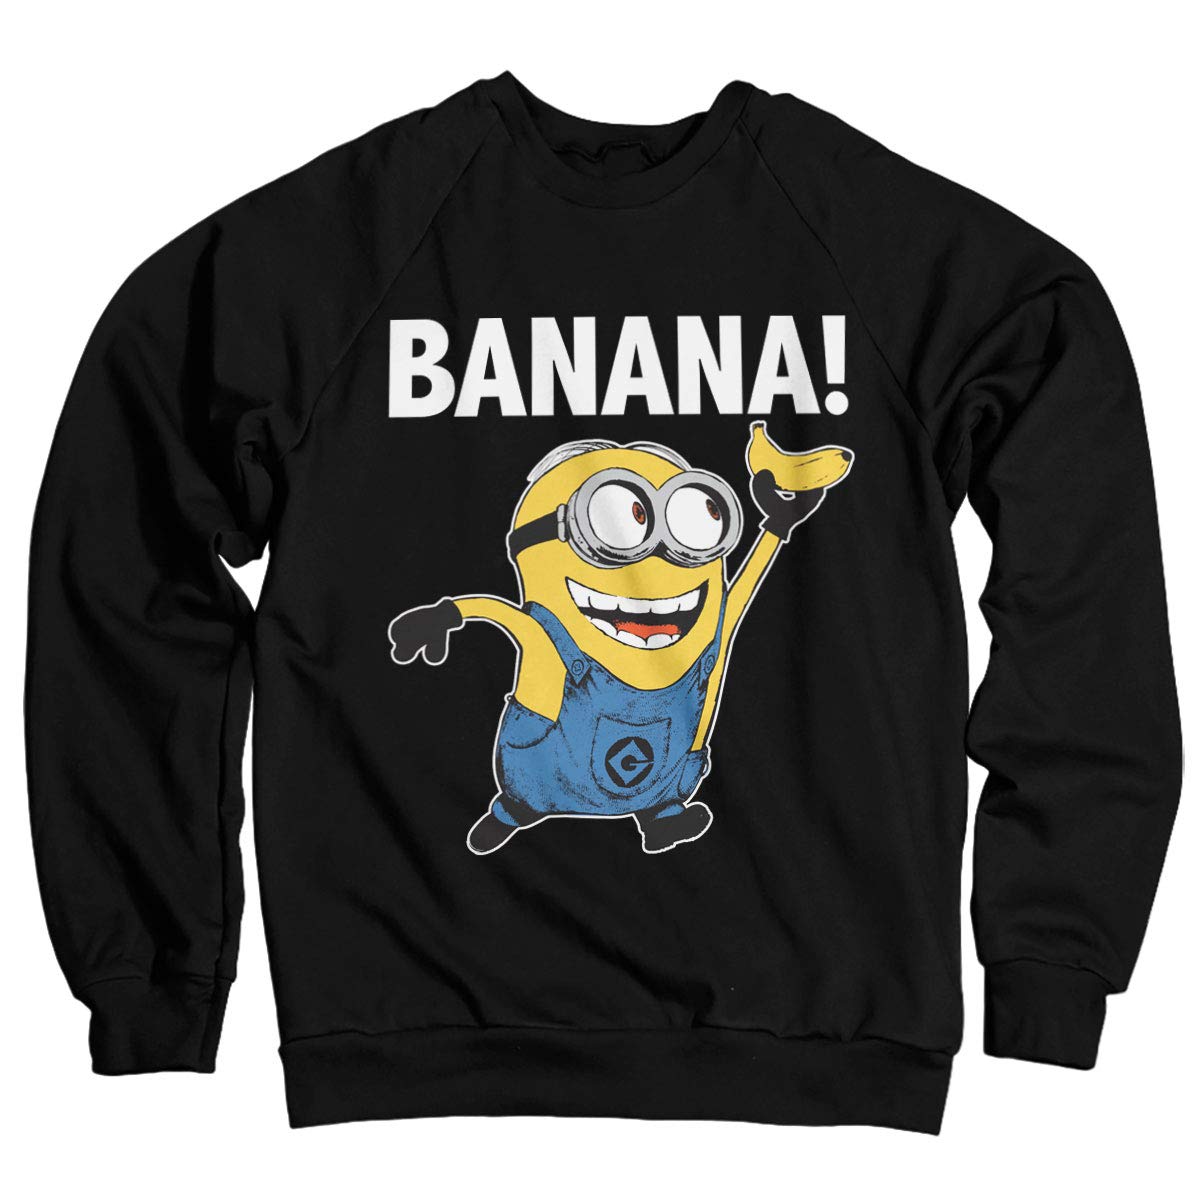 MINIONS Offizielles Lizenzprodukt Banana! Sweatshirt (Schwarz), XL